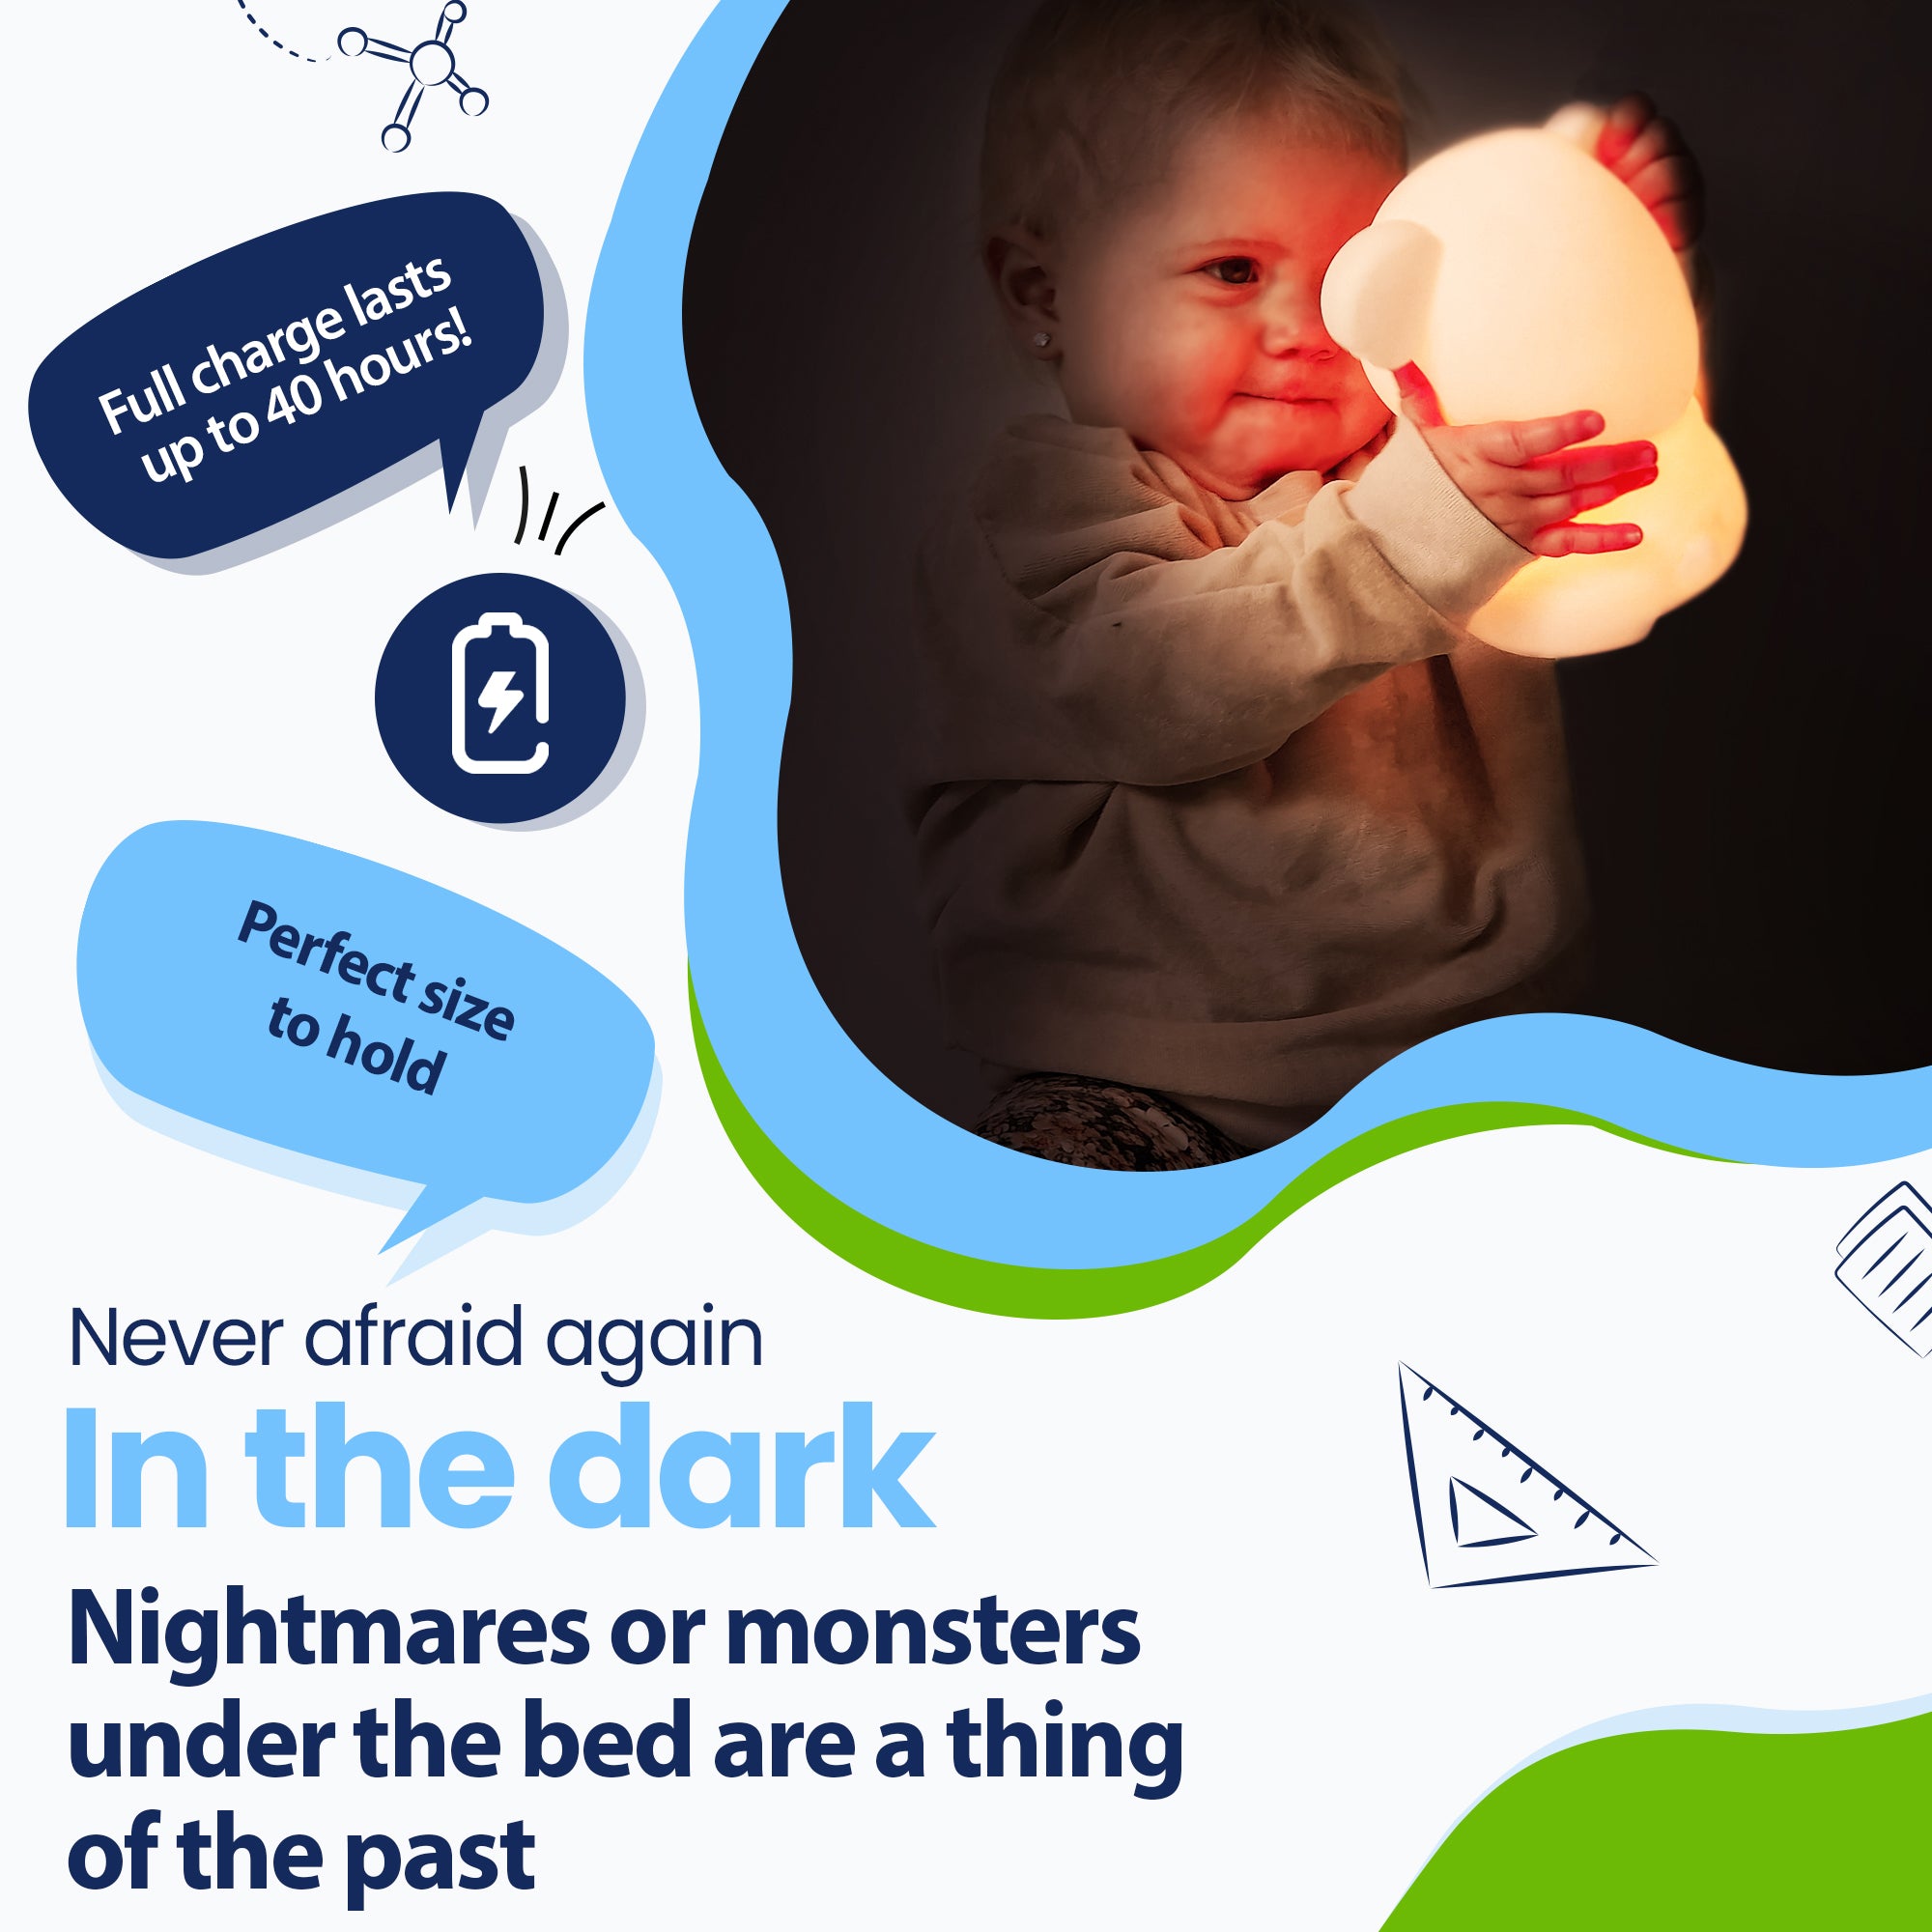 Vær aldrig bange for mørket igen - Mareridt eller monstre under sengen hører fortiden til - Holder op til 40 timer - Perfekt størrelse at holde